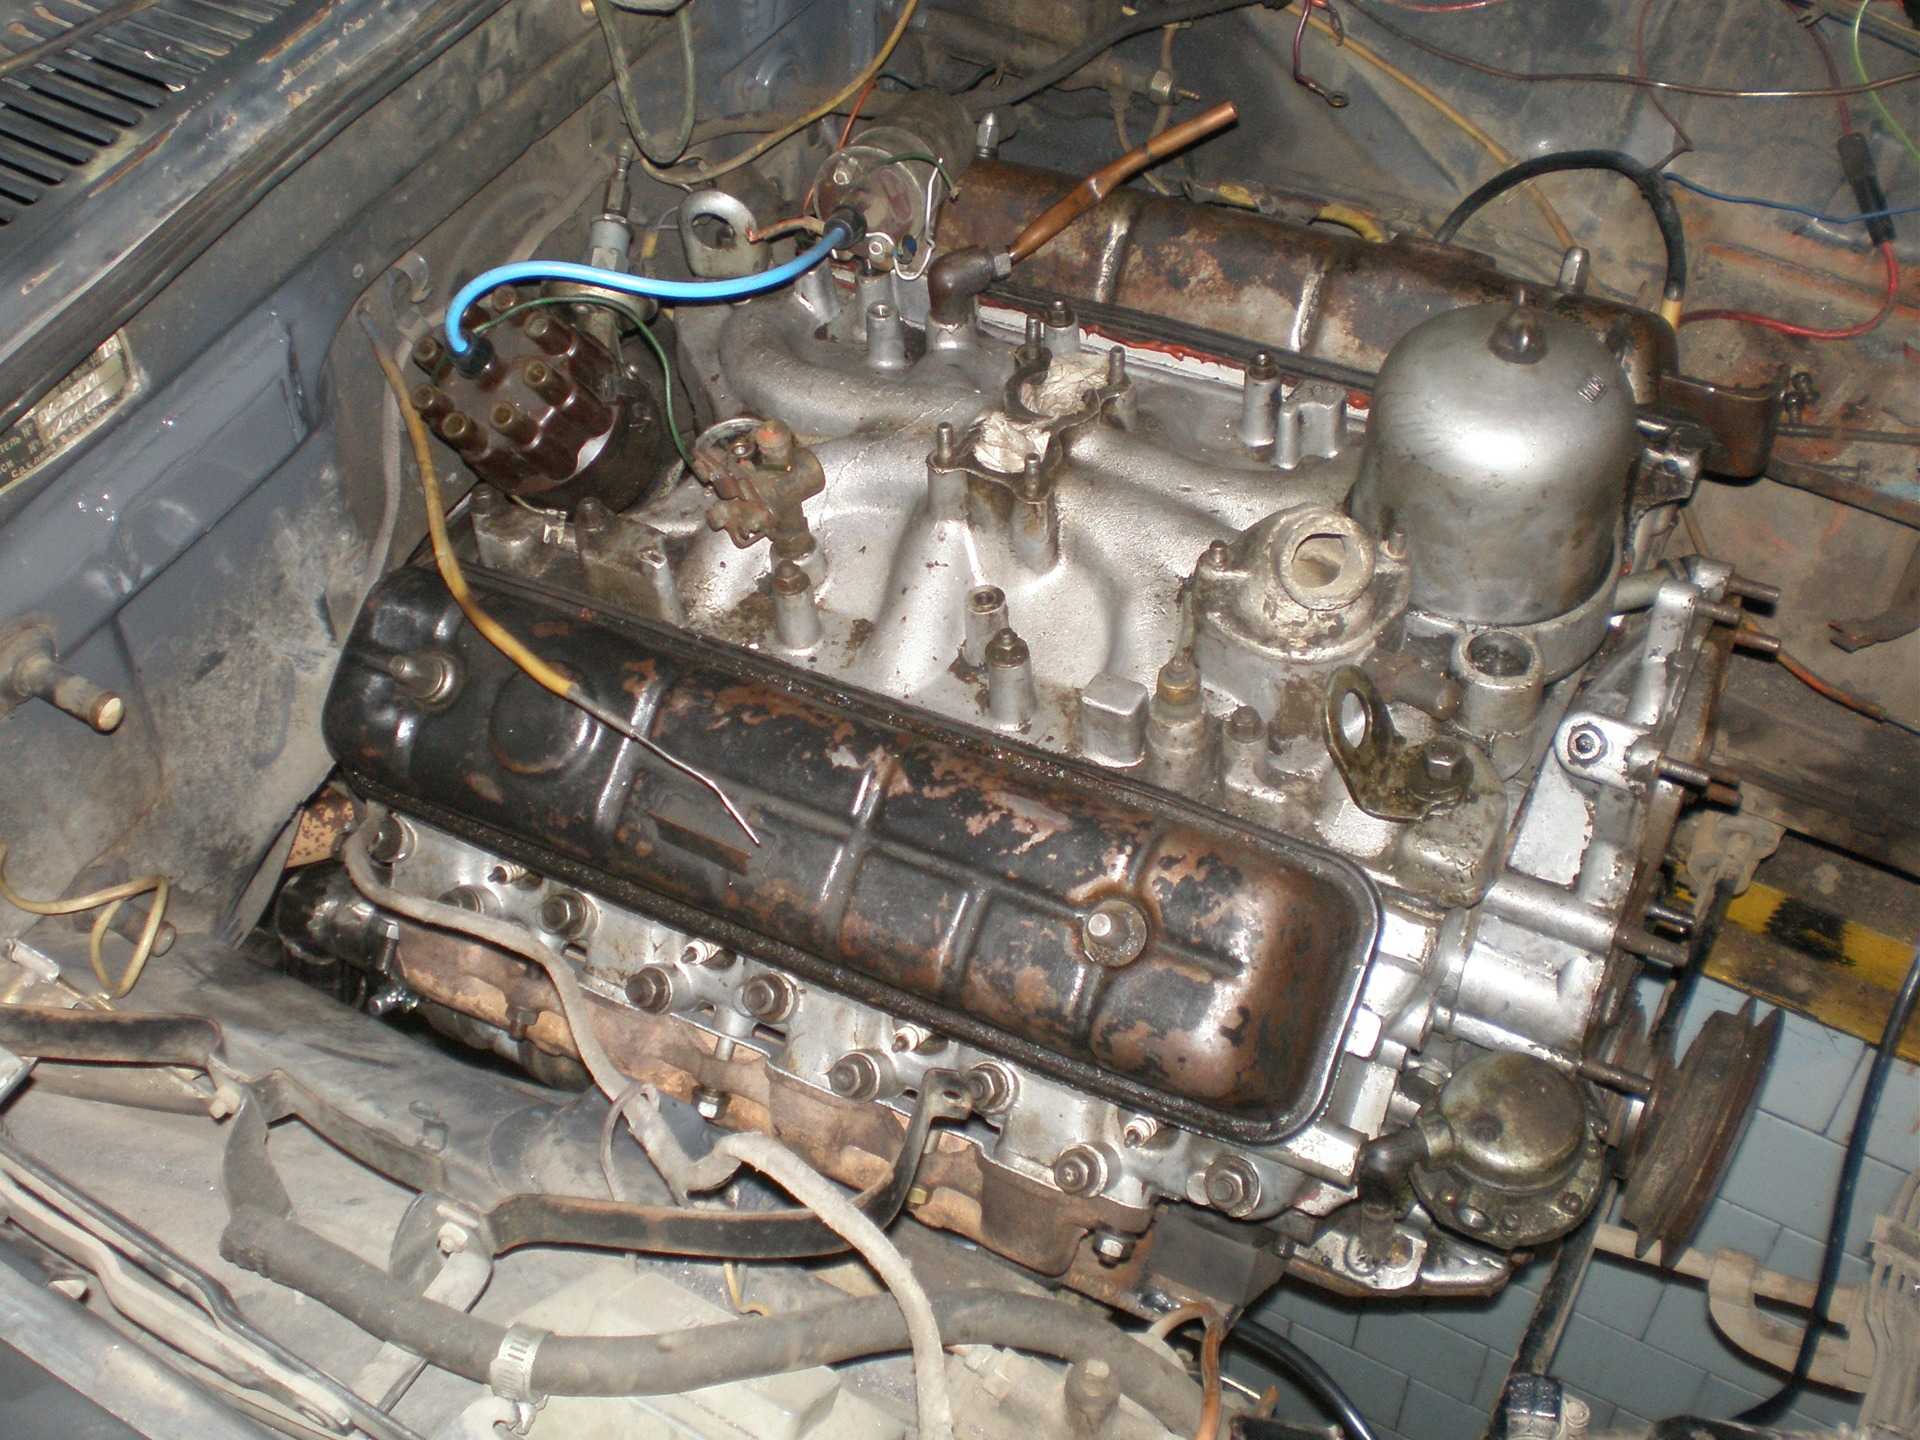 Технические характеристики двигателя ГАЗ 53 Особенности использования, обслуживания и ремонта ЗМЗ 53 Доработка и тюнинг силового агрегата